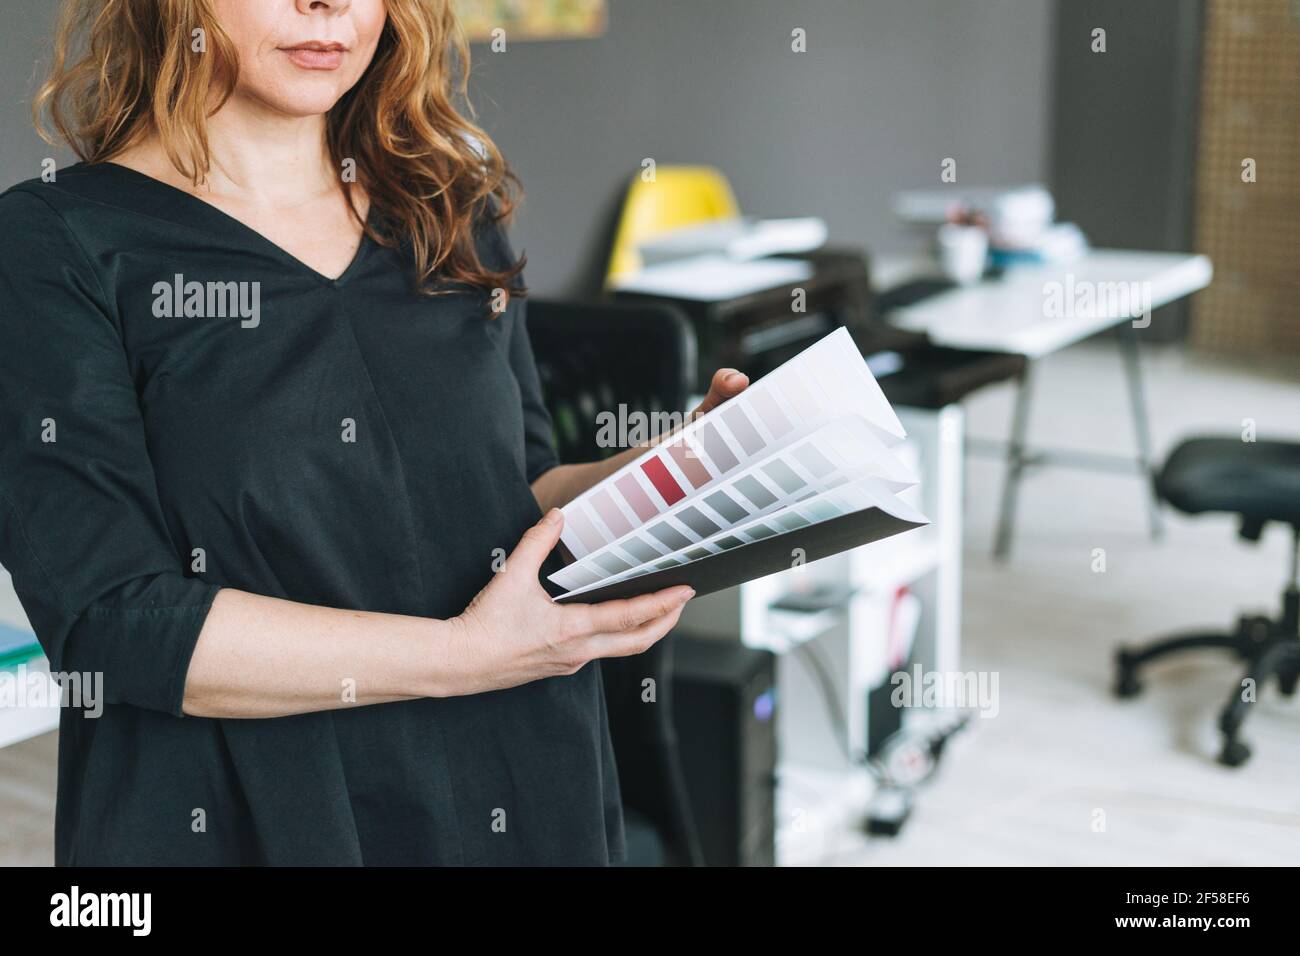 Charmante femme adulte d'âge moyen avec un architecte de cheveux bouclés avec palette de couleurs à portée de main dans un environnement de travail moderne Banque D'Images